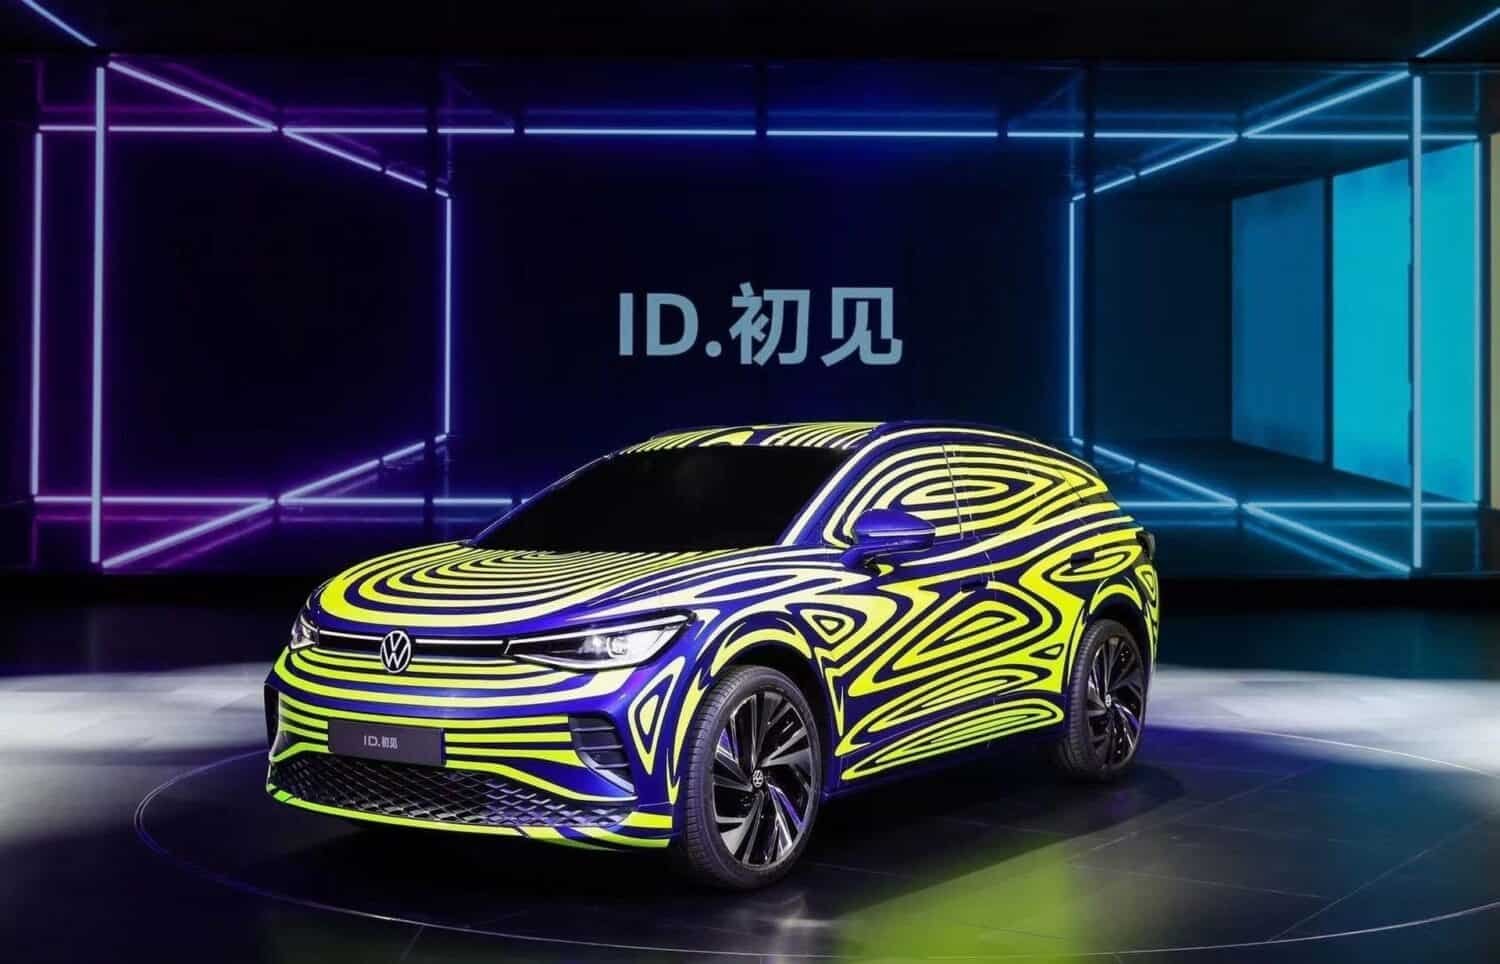 VW SUV-Studie ID. Next feiert ihren Start in China